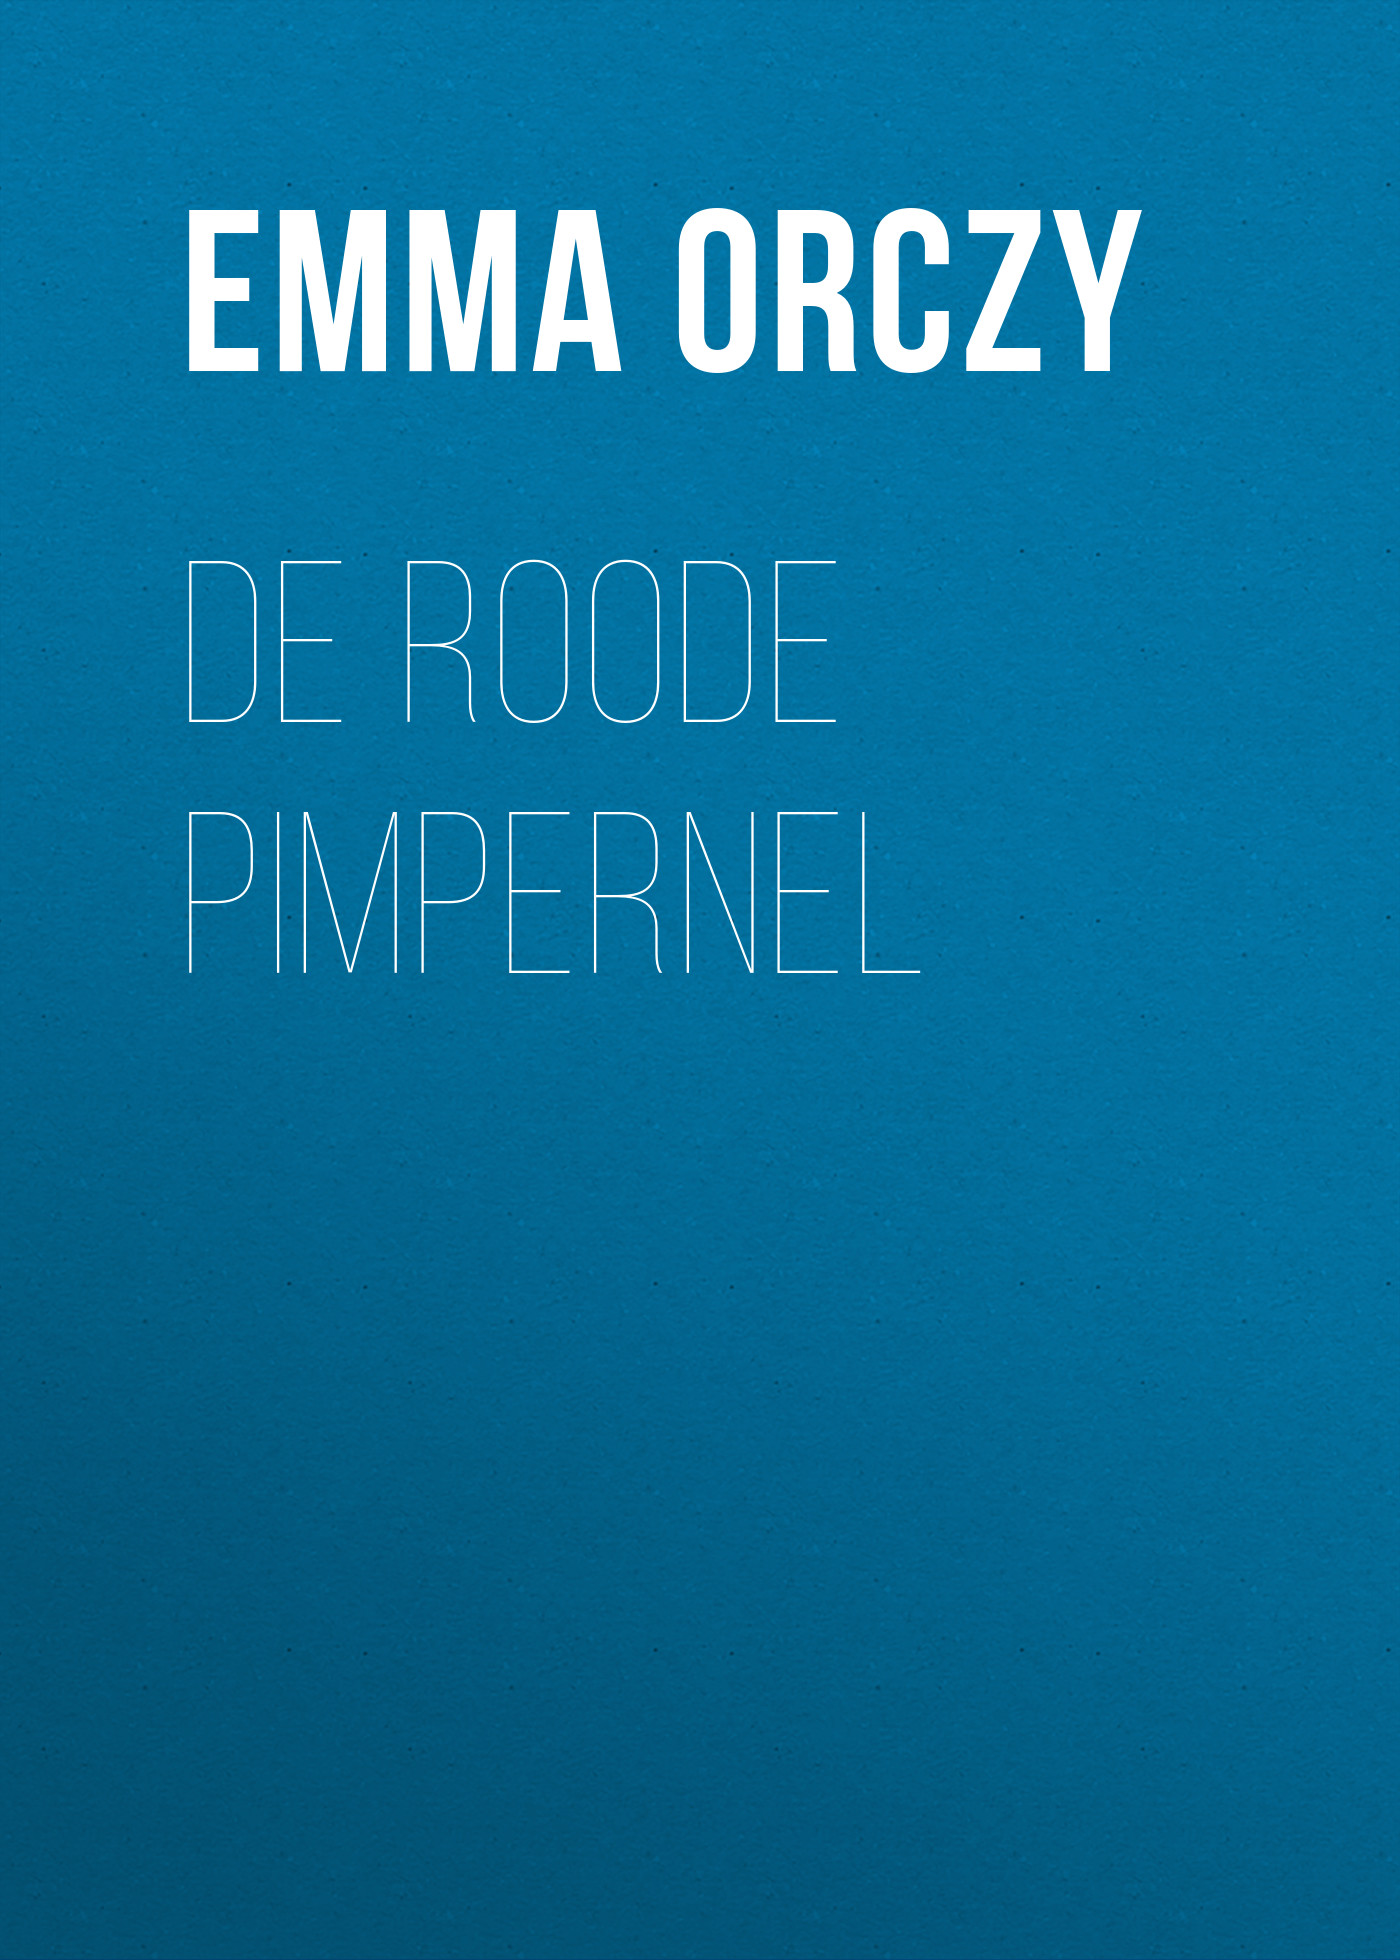 Книга De Roode Pimpernel из серии , созданная Emma Orczy, может относится к жанру Историческая фантастика, Исторические приключения. Стоимость электронной книги De Roode Pimpernel с идентификатором 34843646 составляет 0 руб.